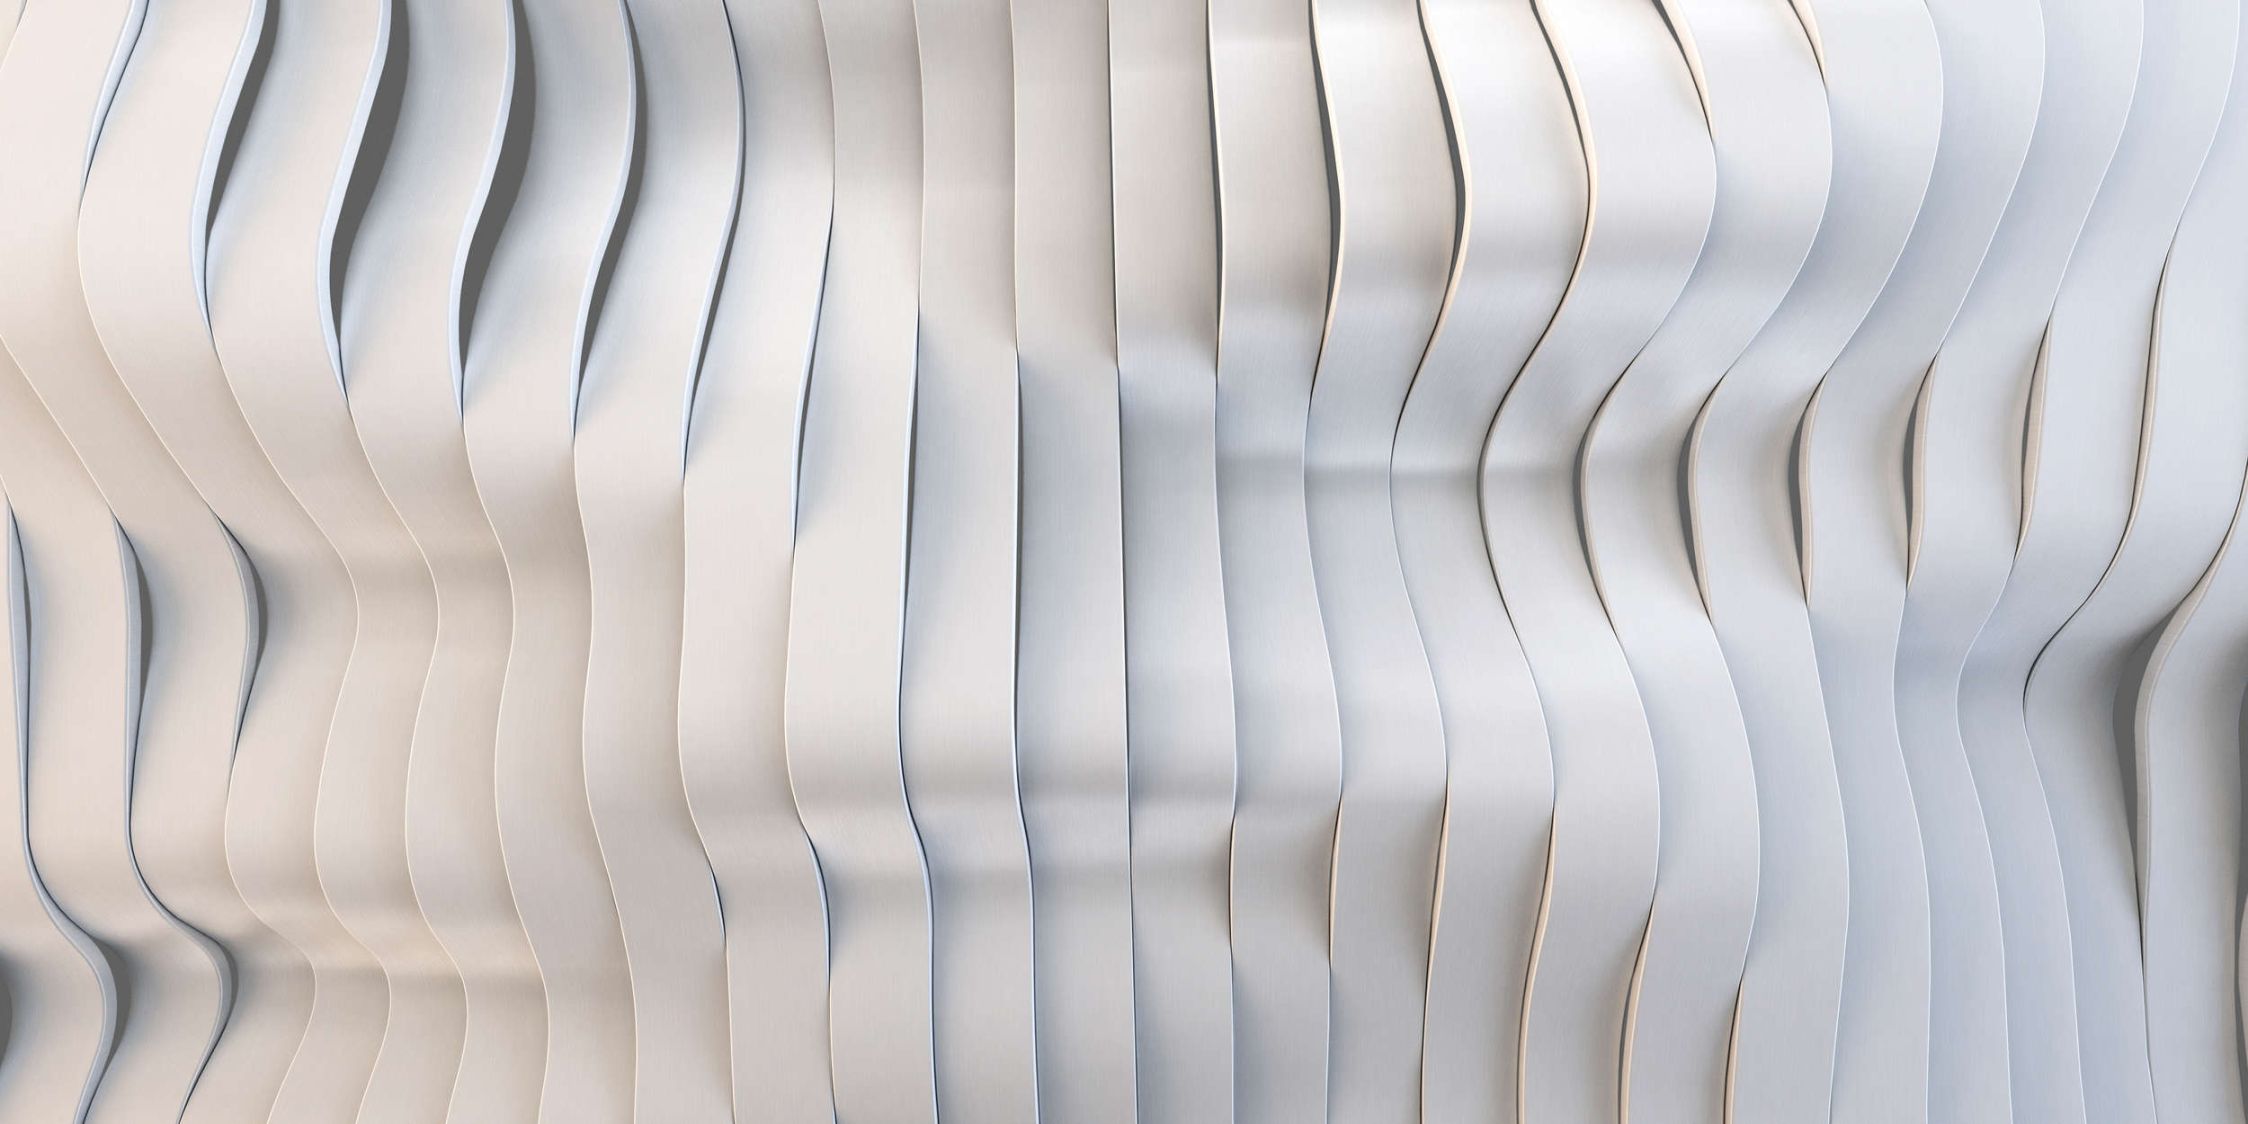             solaris 1 - Digital behang in futuristisch, gestroomlijnd ontwerp - mat, glad vlies
        